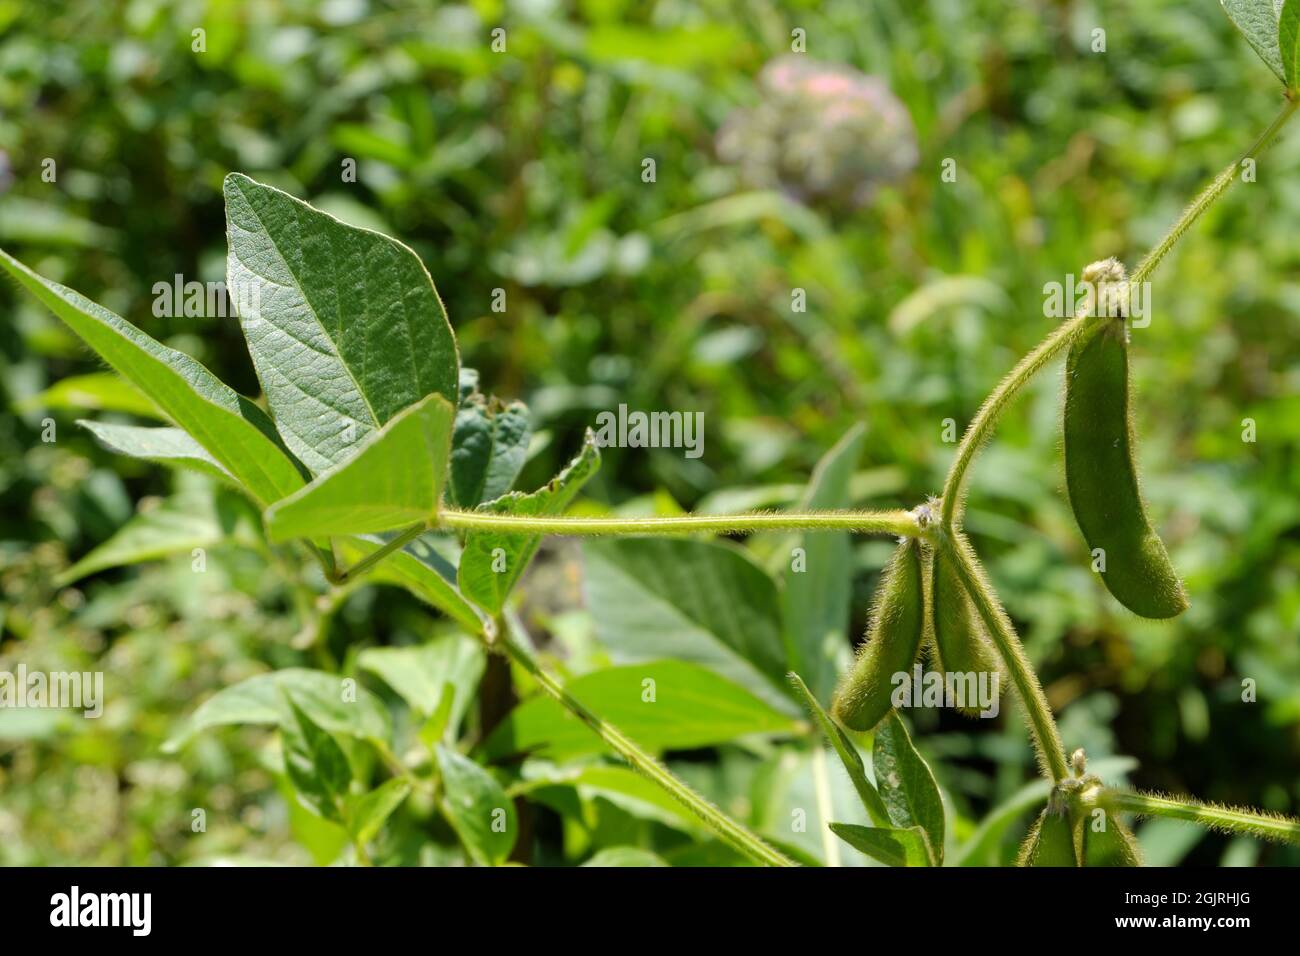 Behaarte, reifende grüne Schoten von gemeinen Bohnen auf der Plantage. Selektiver Fokus. Stockfoto